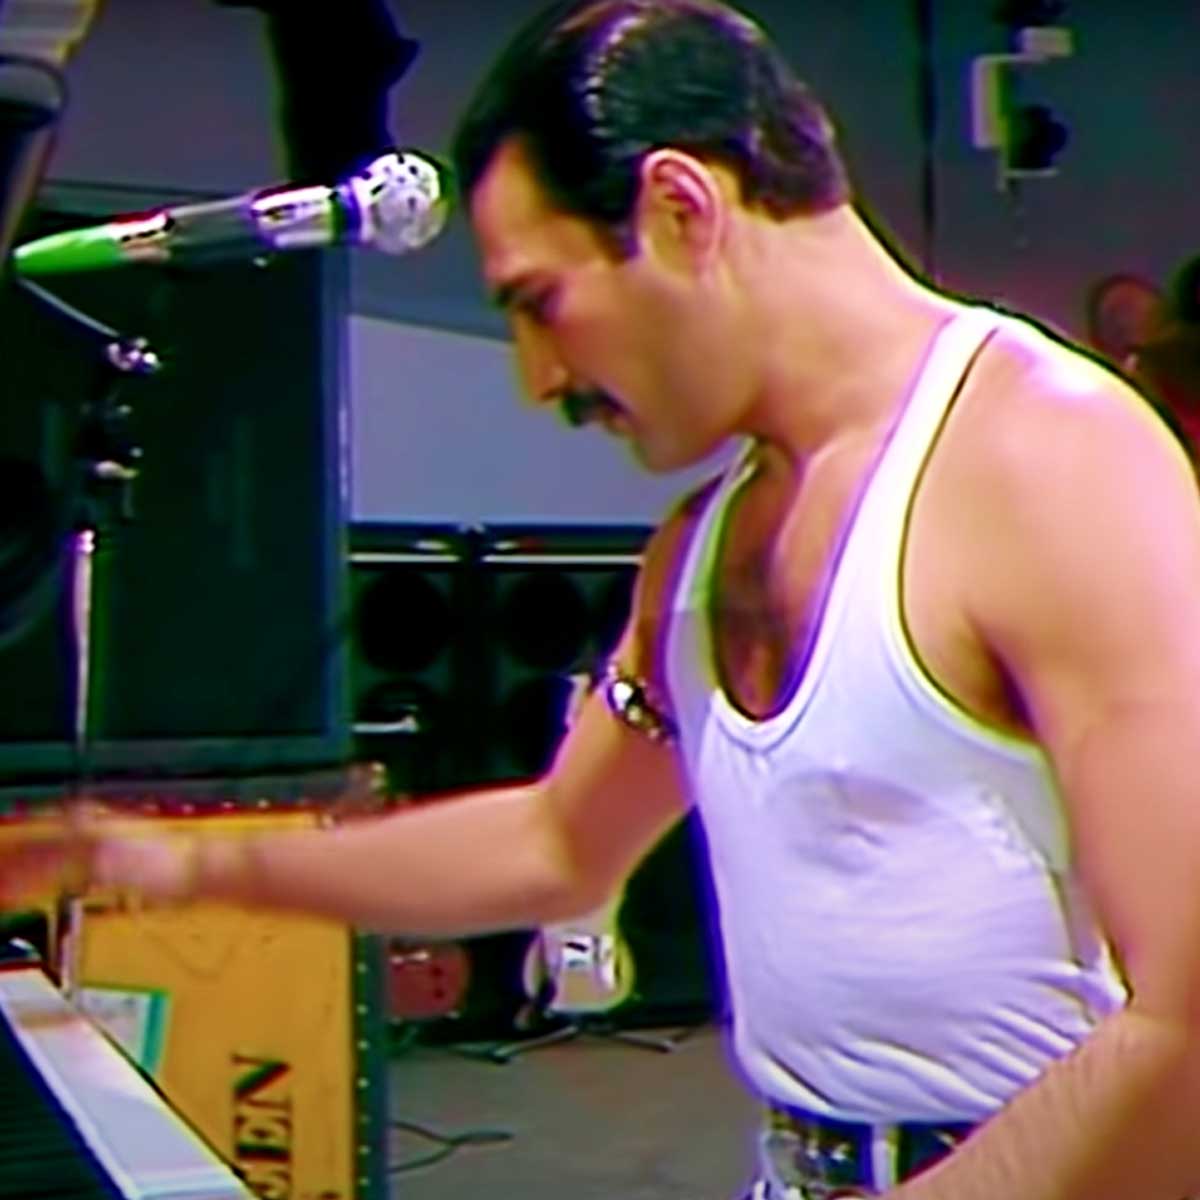 Play Bohemian Rhapsody By Queen On Virtual Piano - bohemian rhapsody roblox piano easy